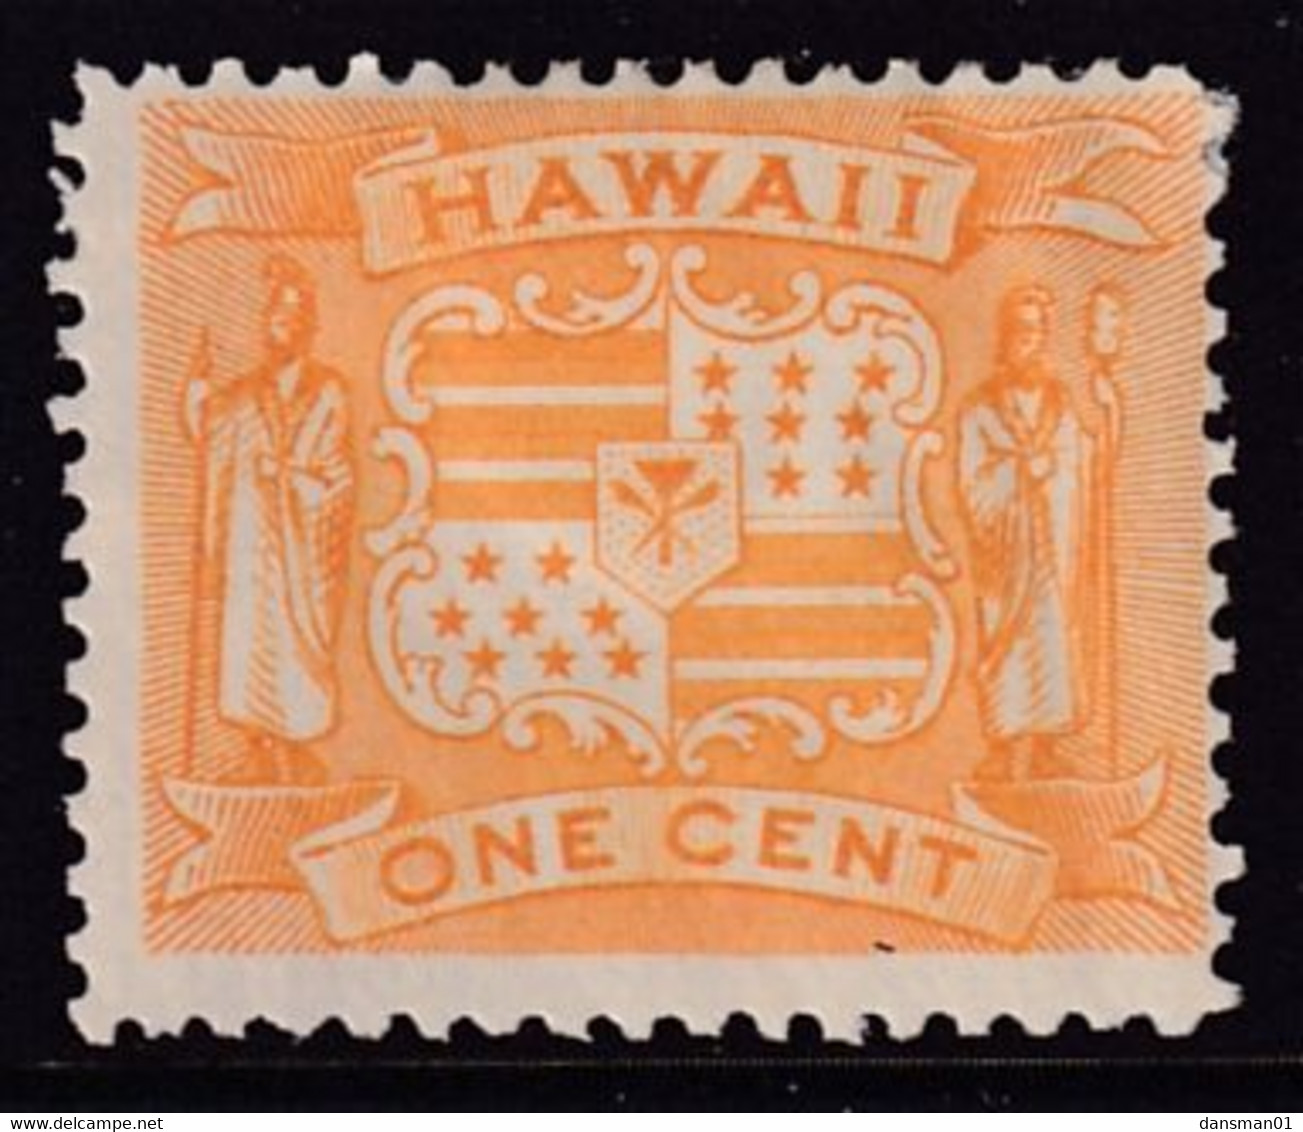 HAWAII 1894 Pictorial Sc 74 Mint Hinged - Hawaii